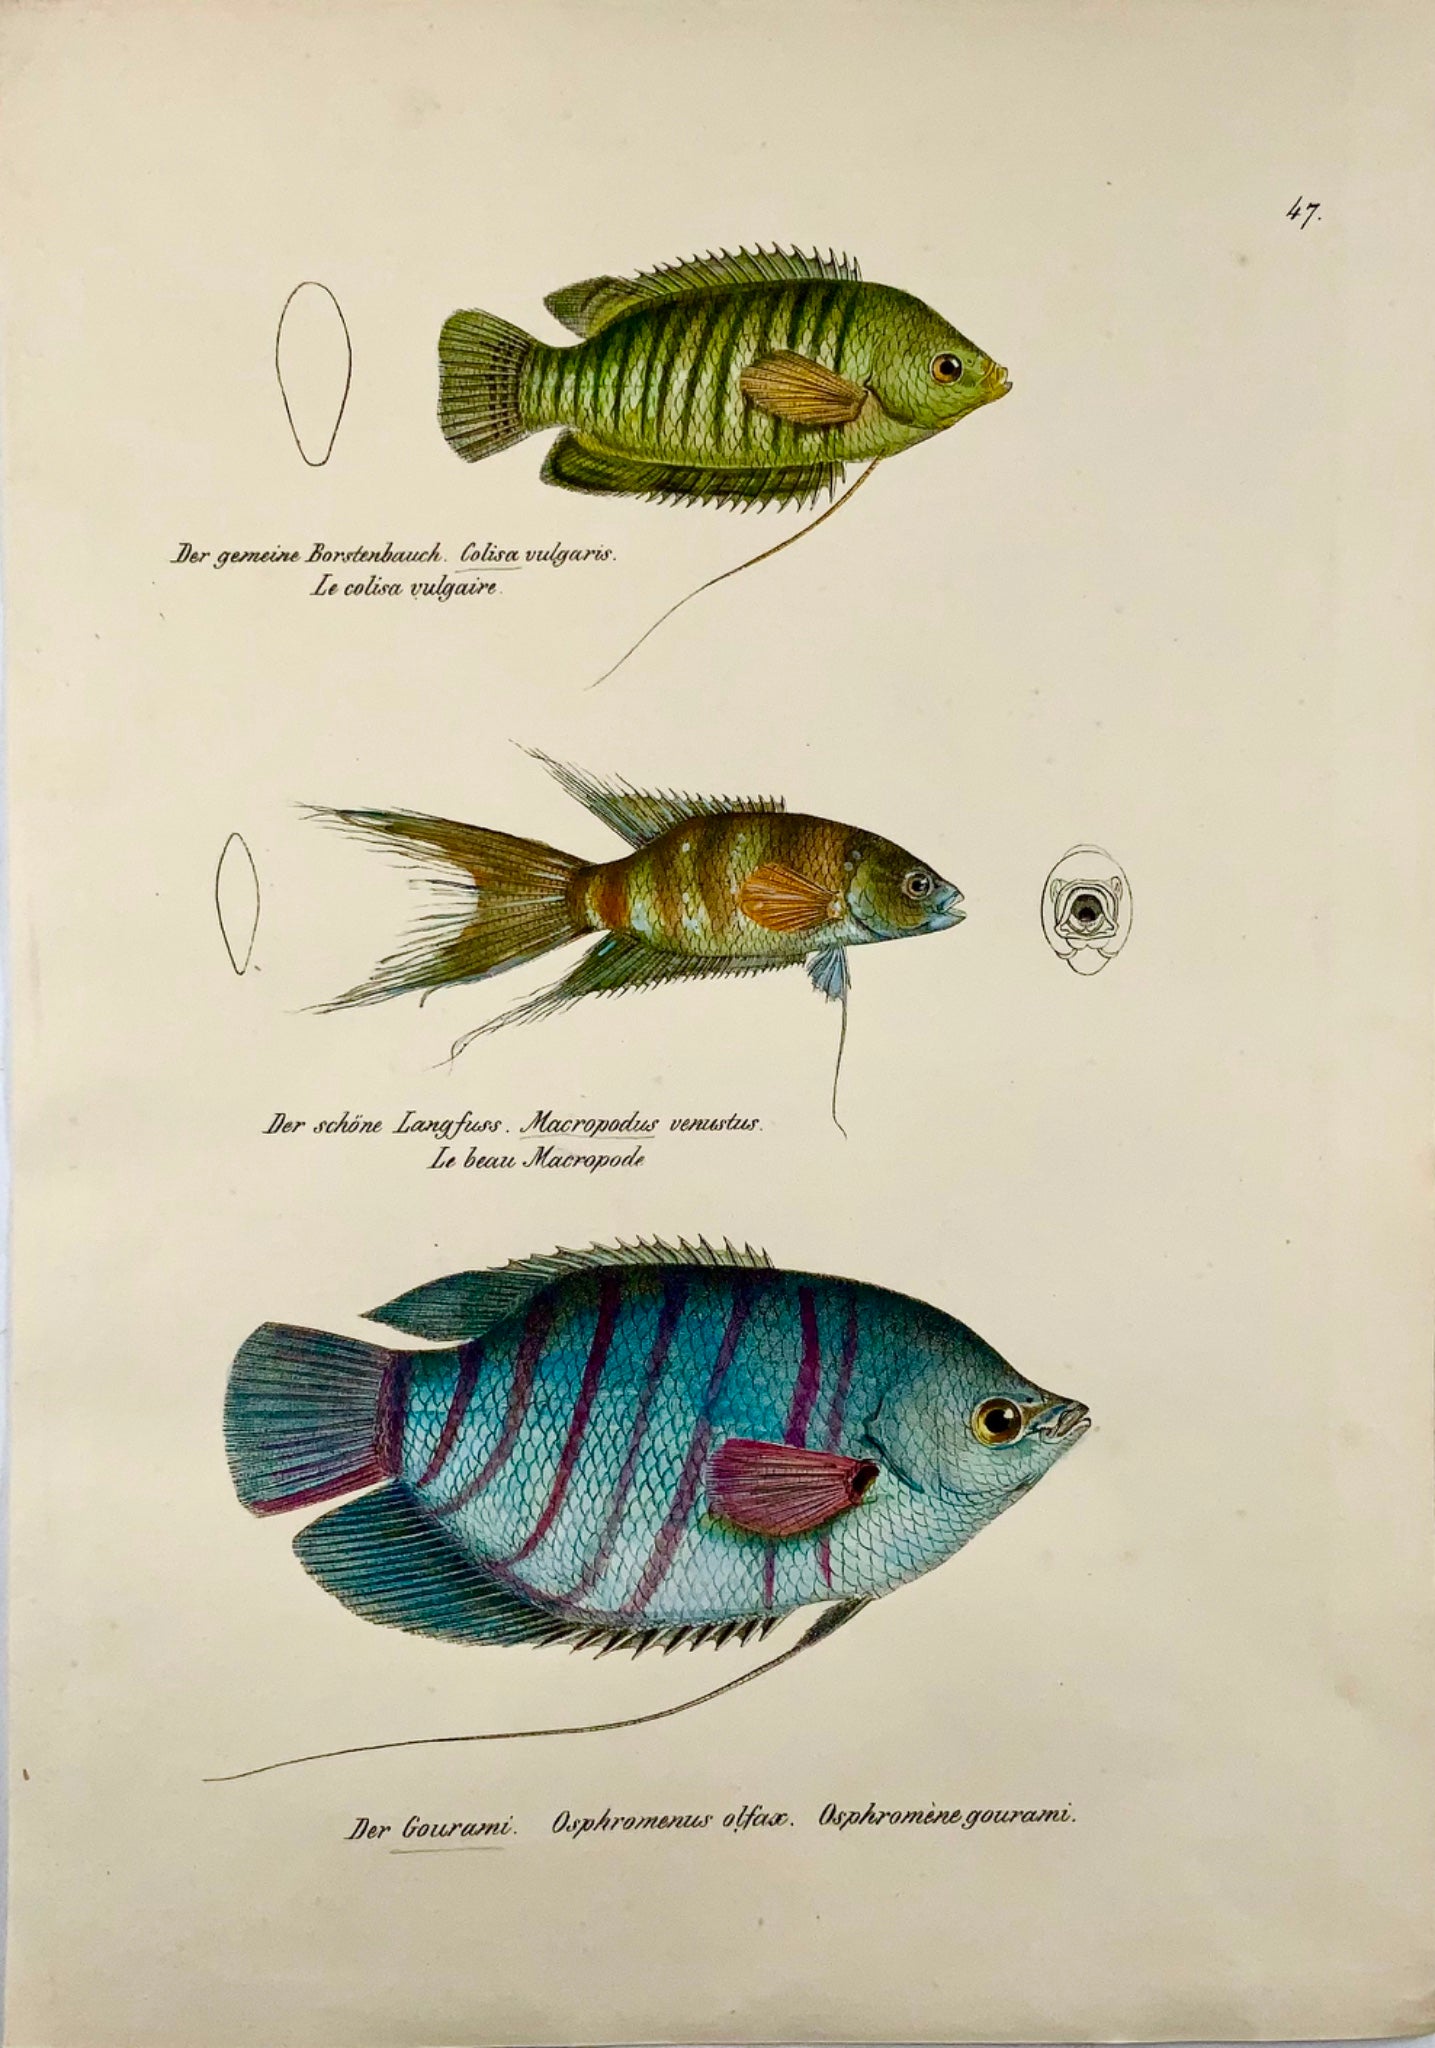 1833 Gourami, labirinto, pesci d'acquario, H Schinz, folio, litografia colorata a mano